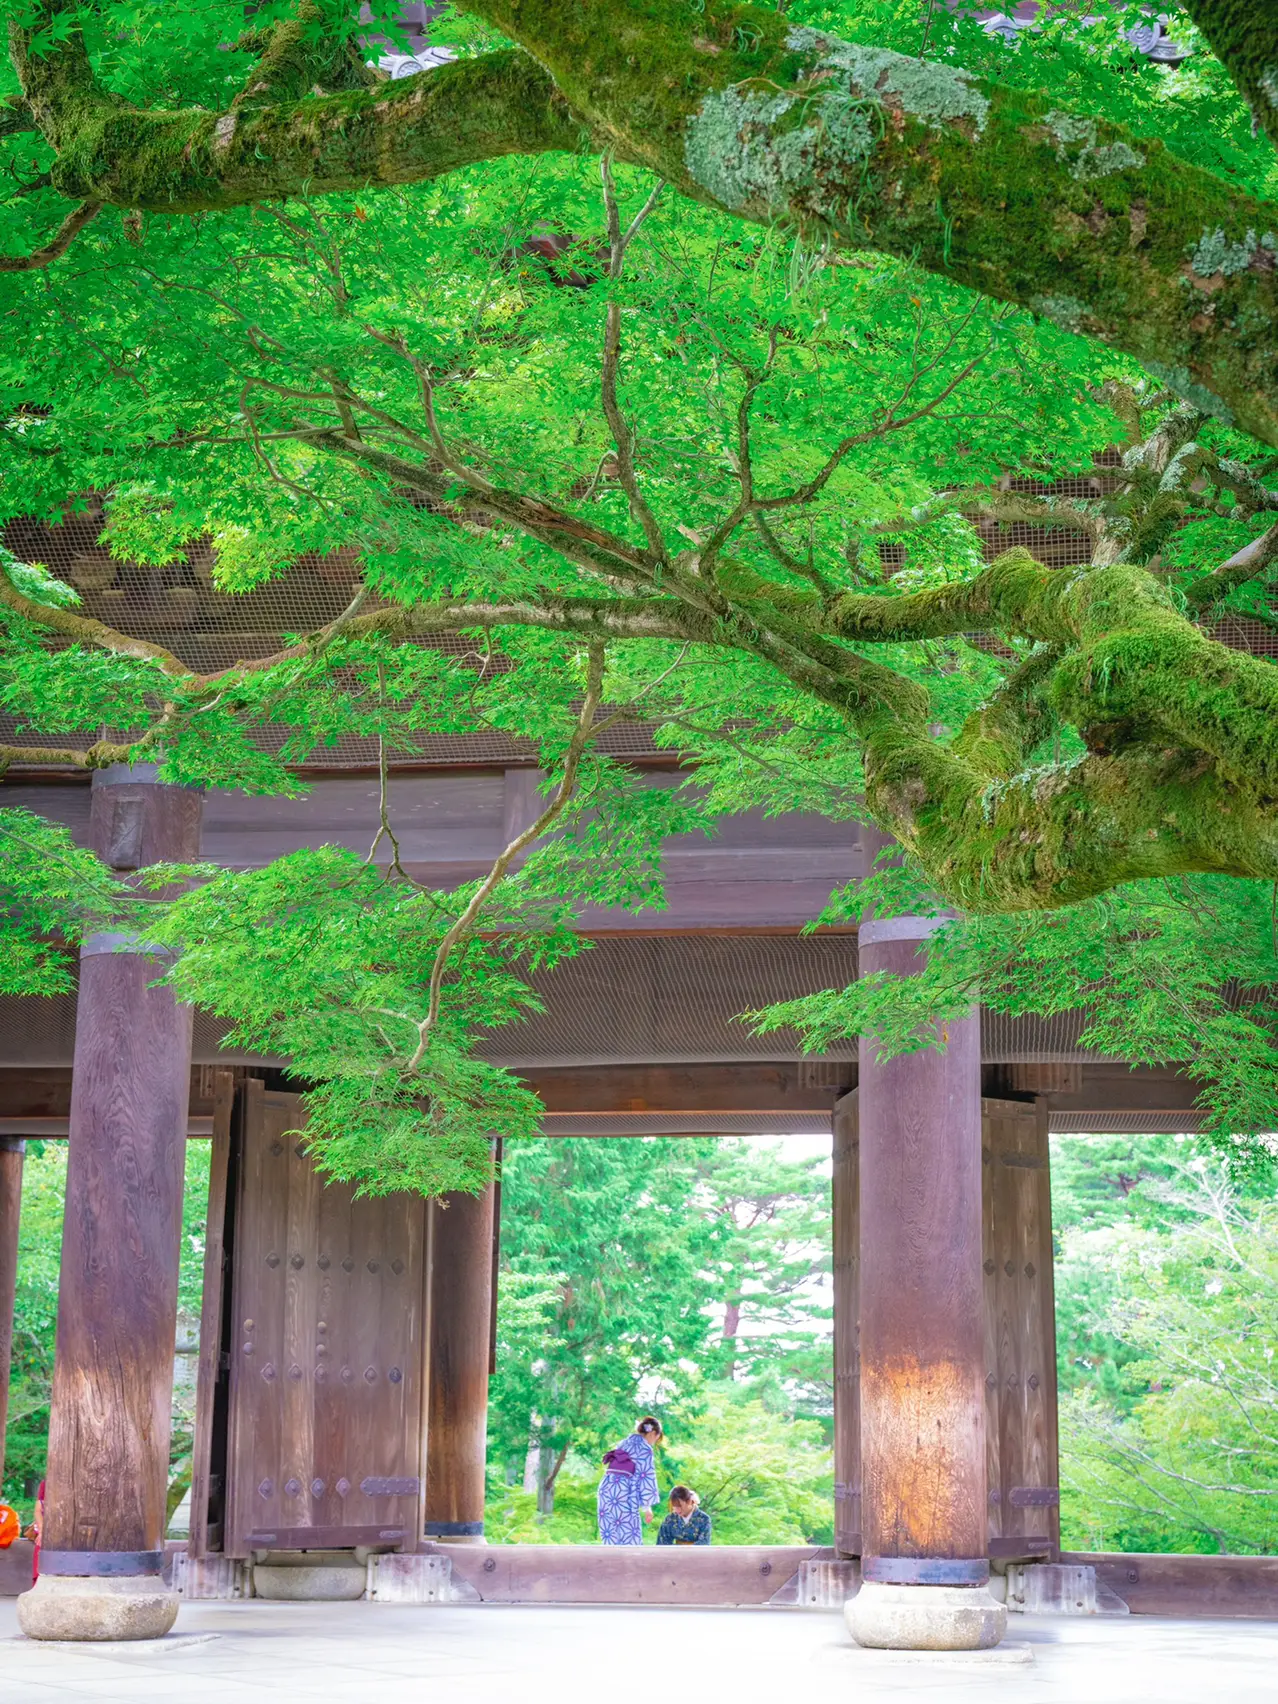 【死ぬまでに絶対行きたい日本の風景】南禅寺@京都の画像 (3枚目)